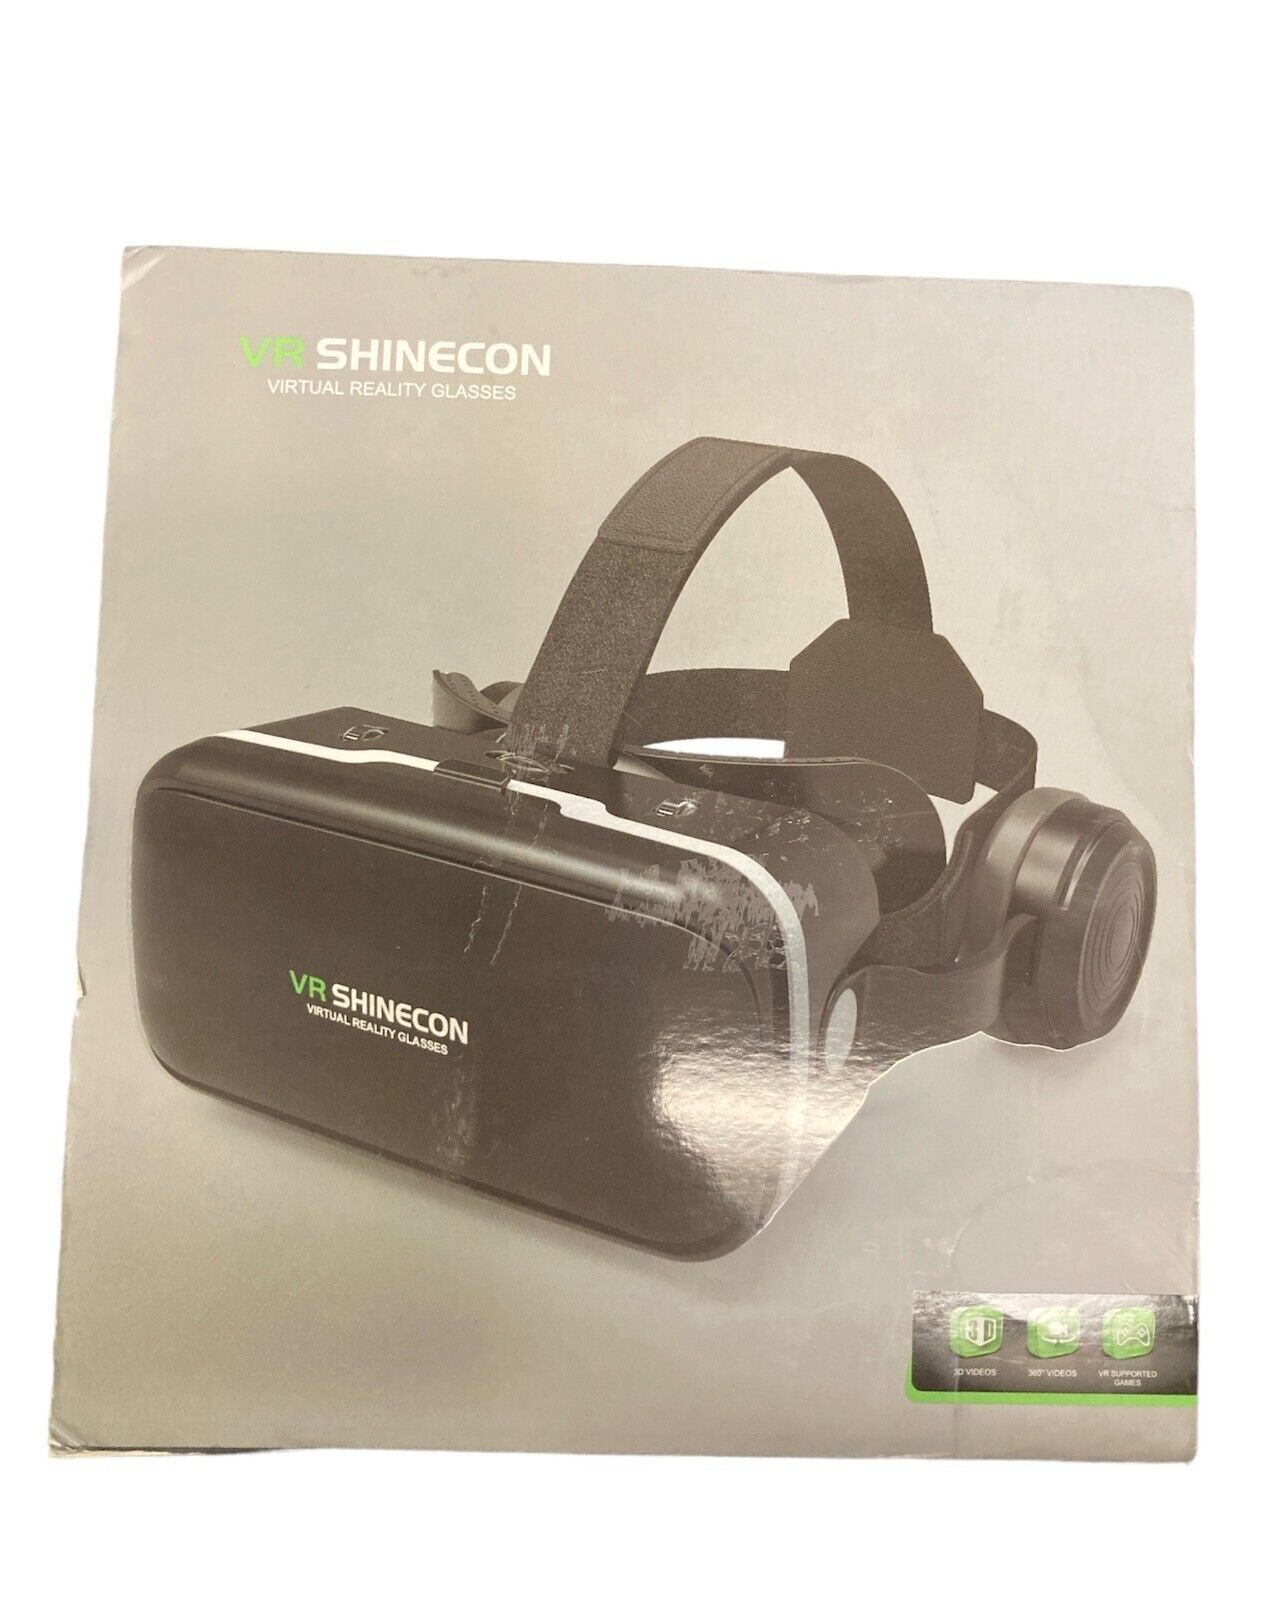 VR Shinecon Virtual Reality Glasses, Universal Smartphone Compatibility, Wide